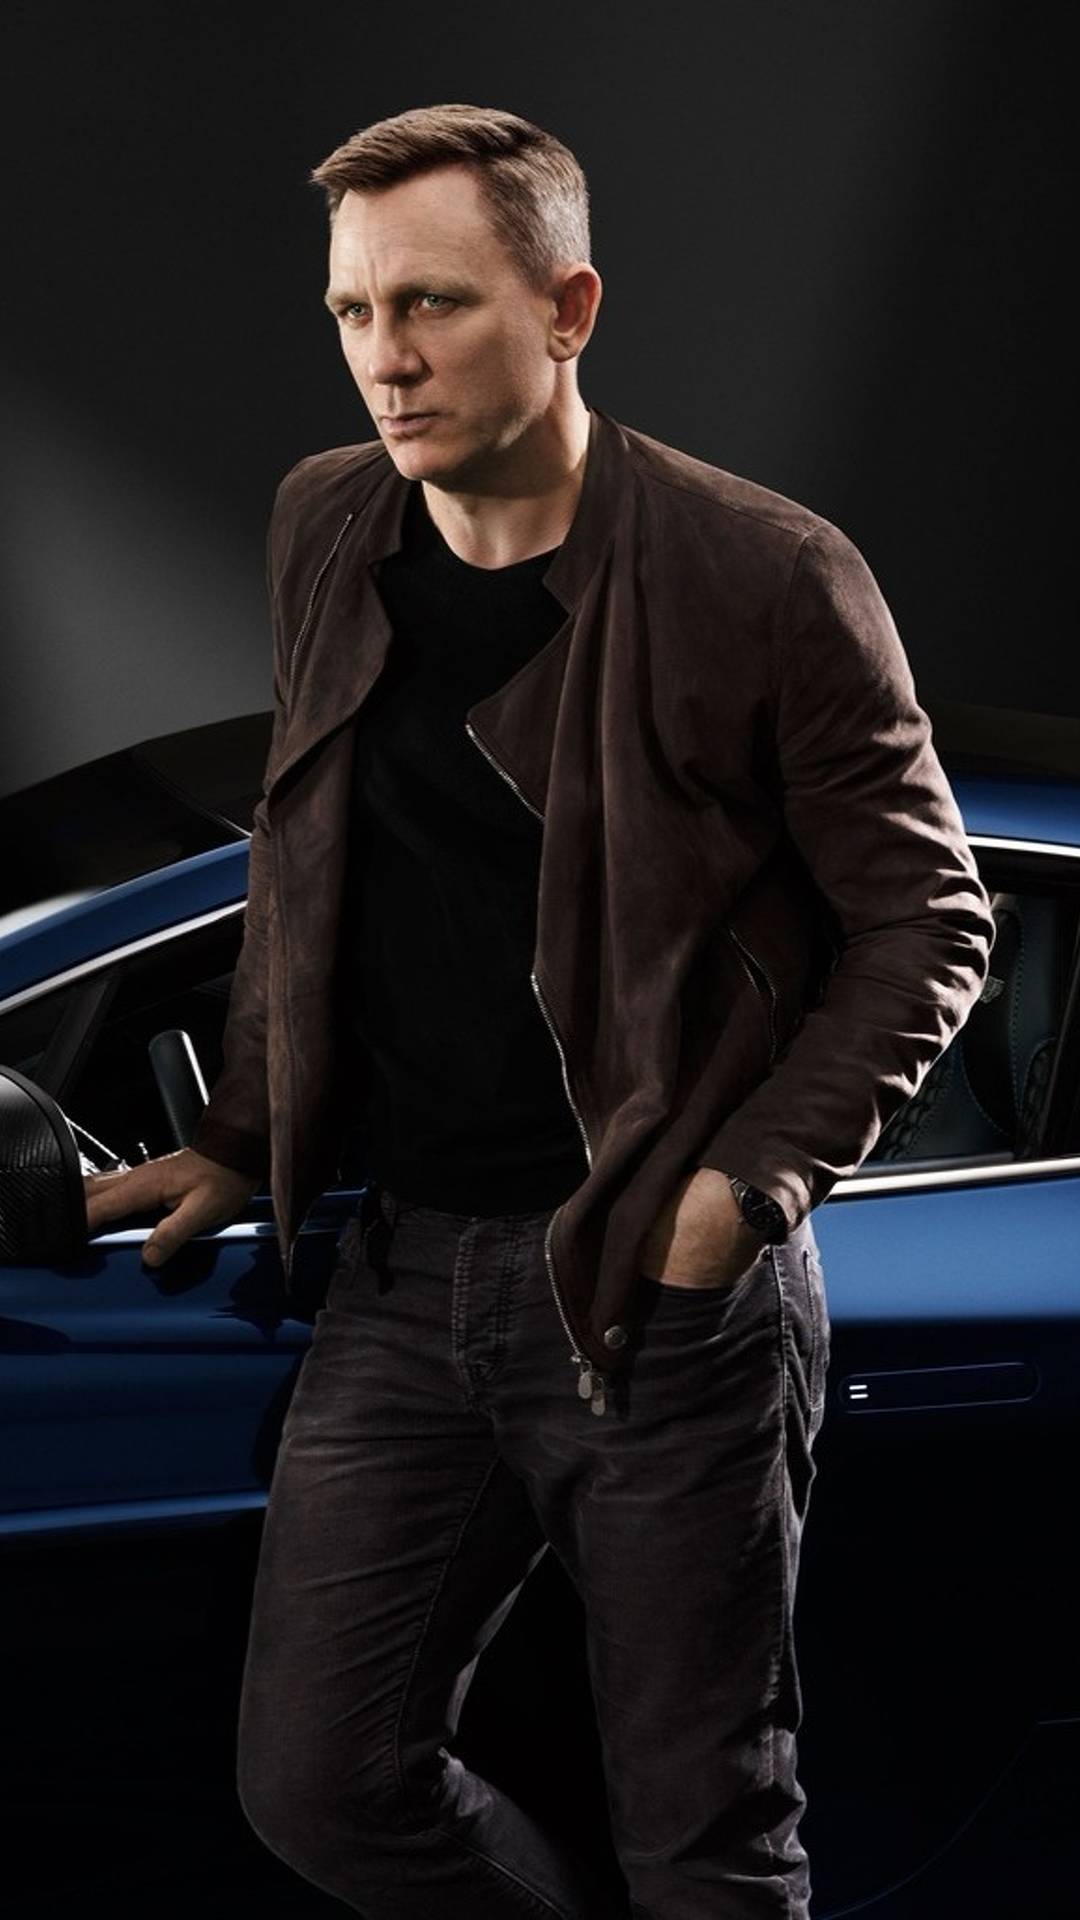 ممثل جيمس بوند يعرض سيارته أستون مارتن فانكويش للبيع في مزاد علني 2